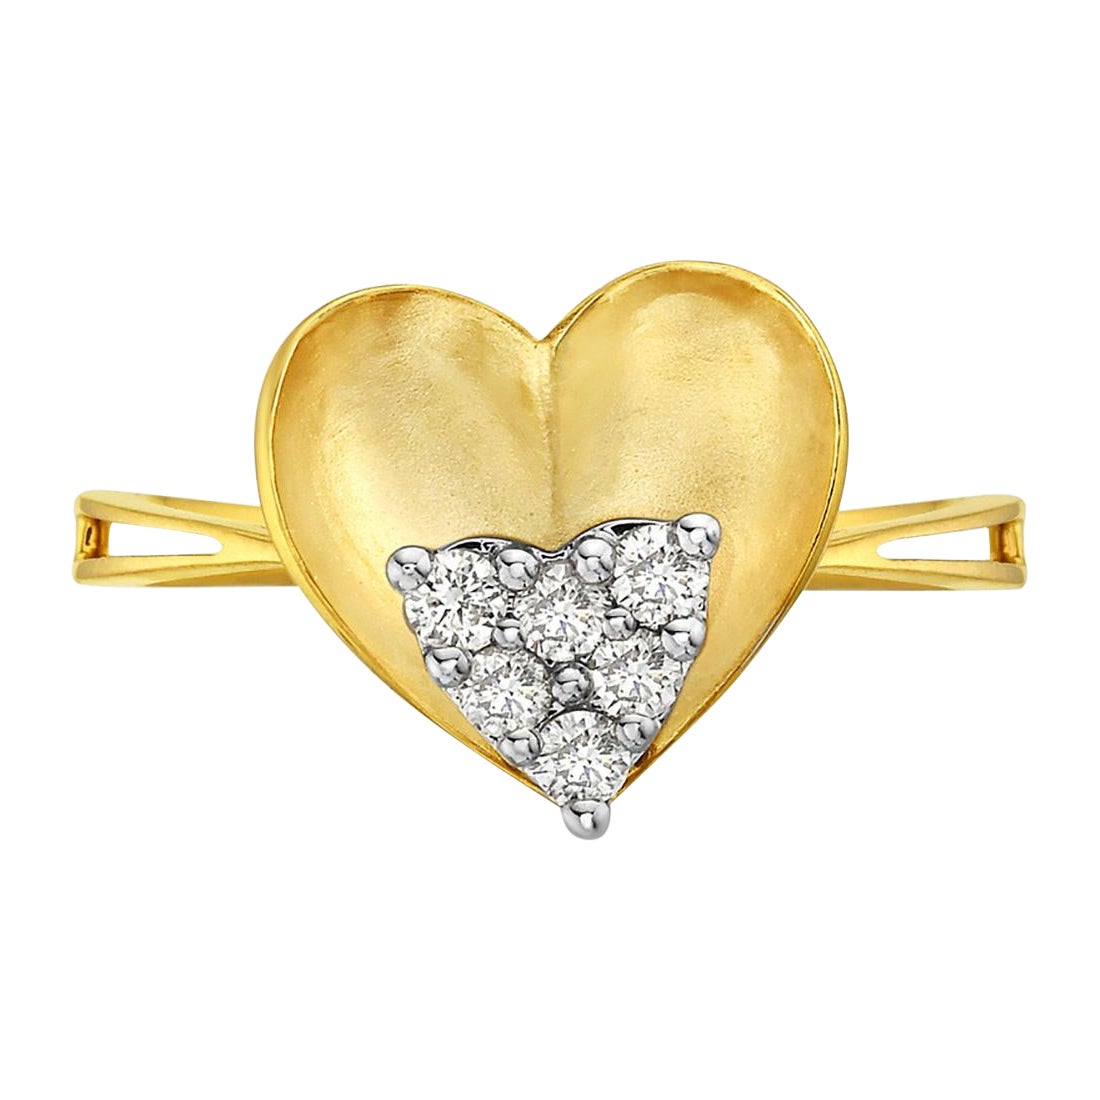 Herzform 14k Gelbgold Classic Ring Ausgestattet mit Diamanten in der Mitte